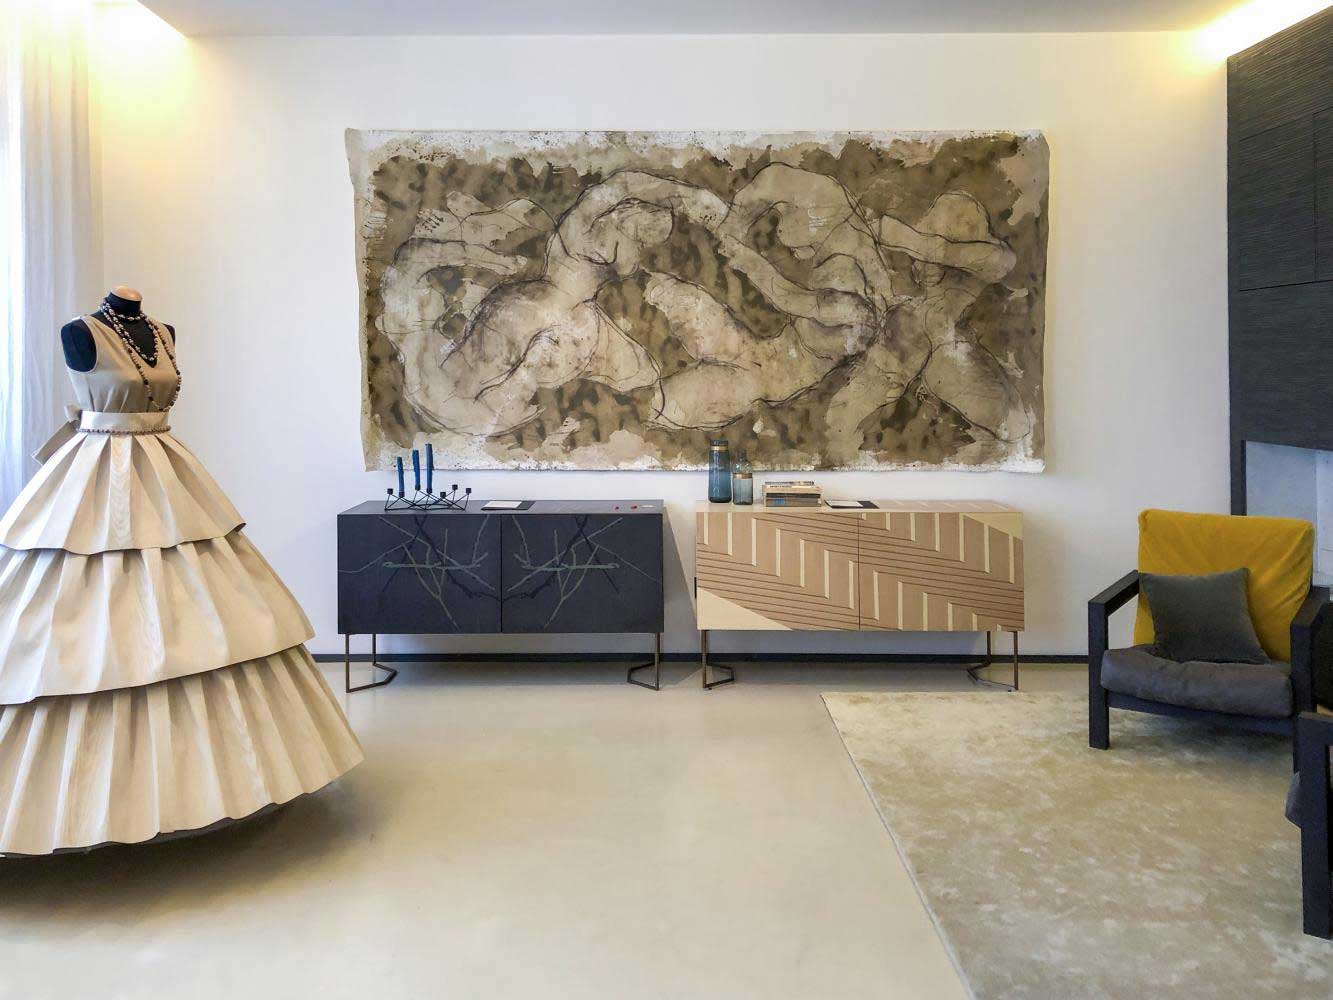 Laurameroni's 'Intarsia la magia del legno' is a capsule collection of dresses and furniture